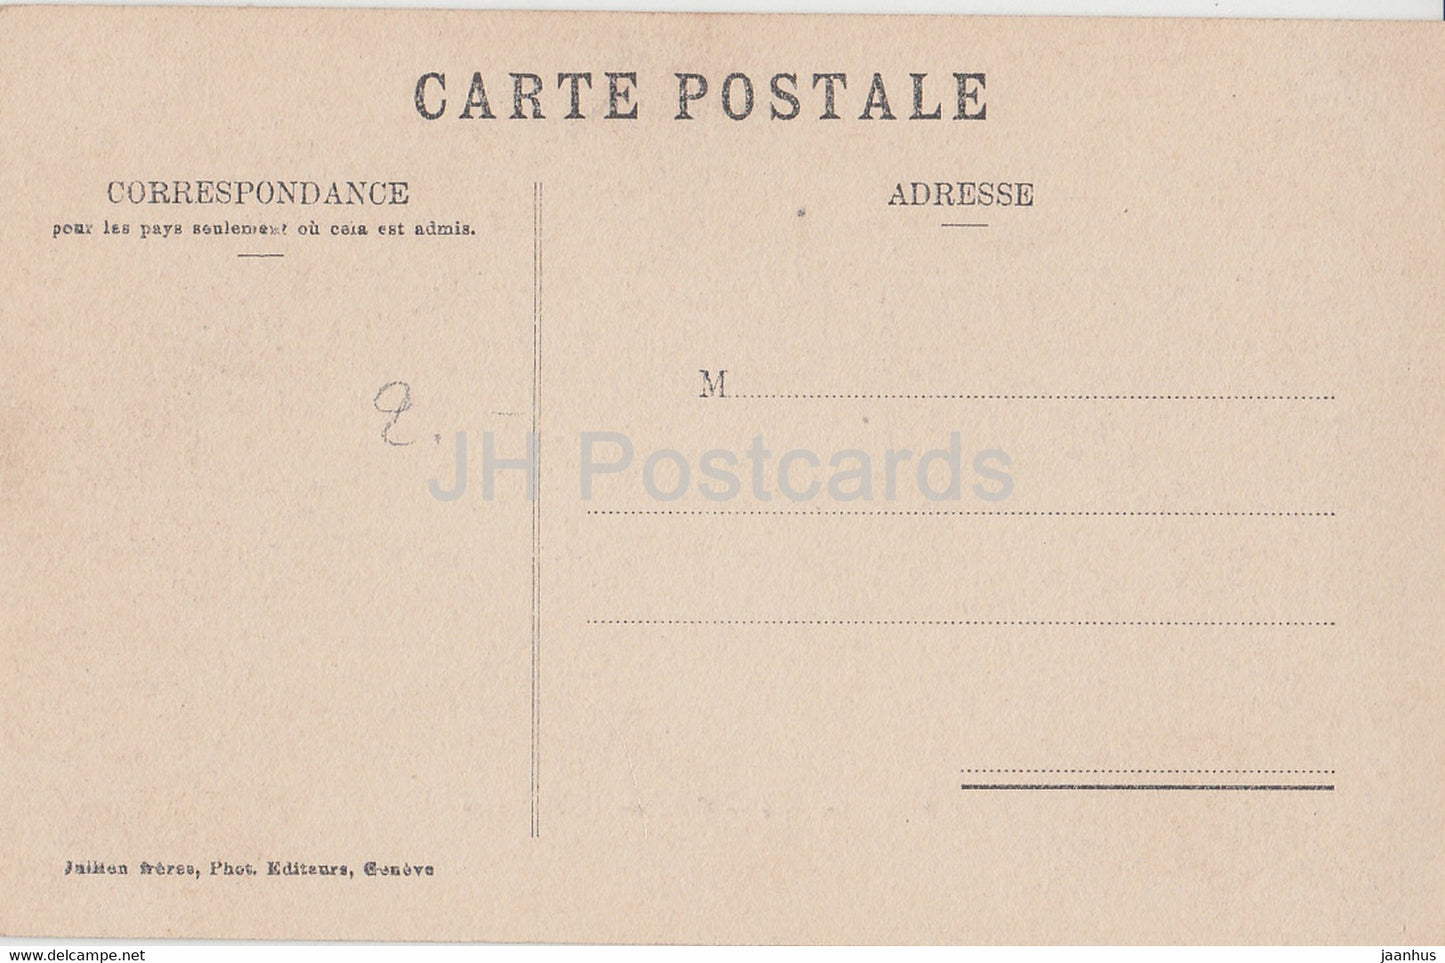 Genf - Genf - Quai du Mont Blanc - 241 - alte Postkarte - 1911 - Schweiz - gebraucht